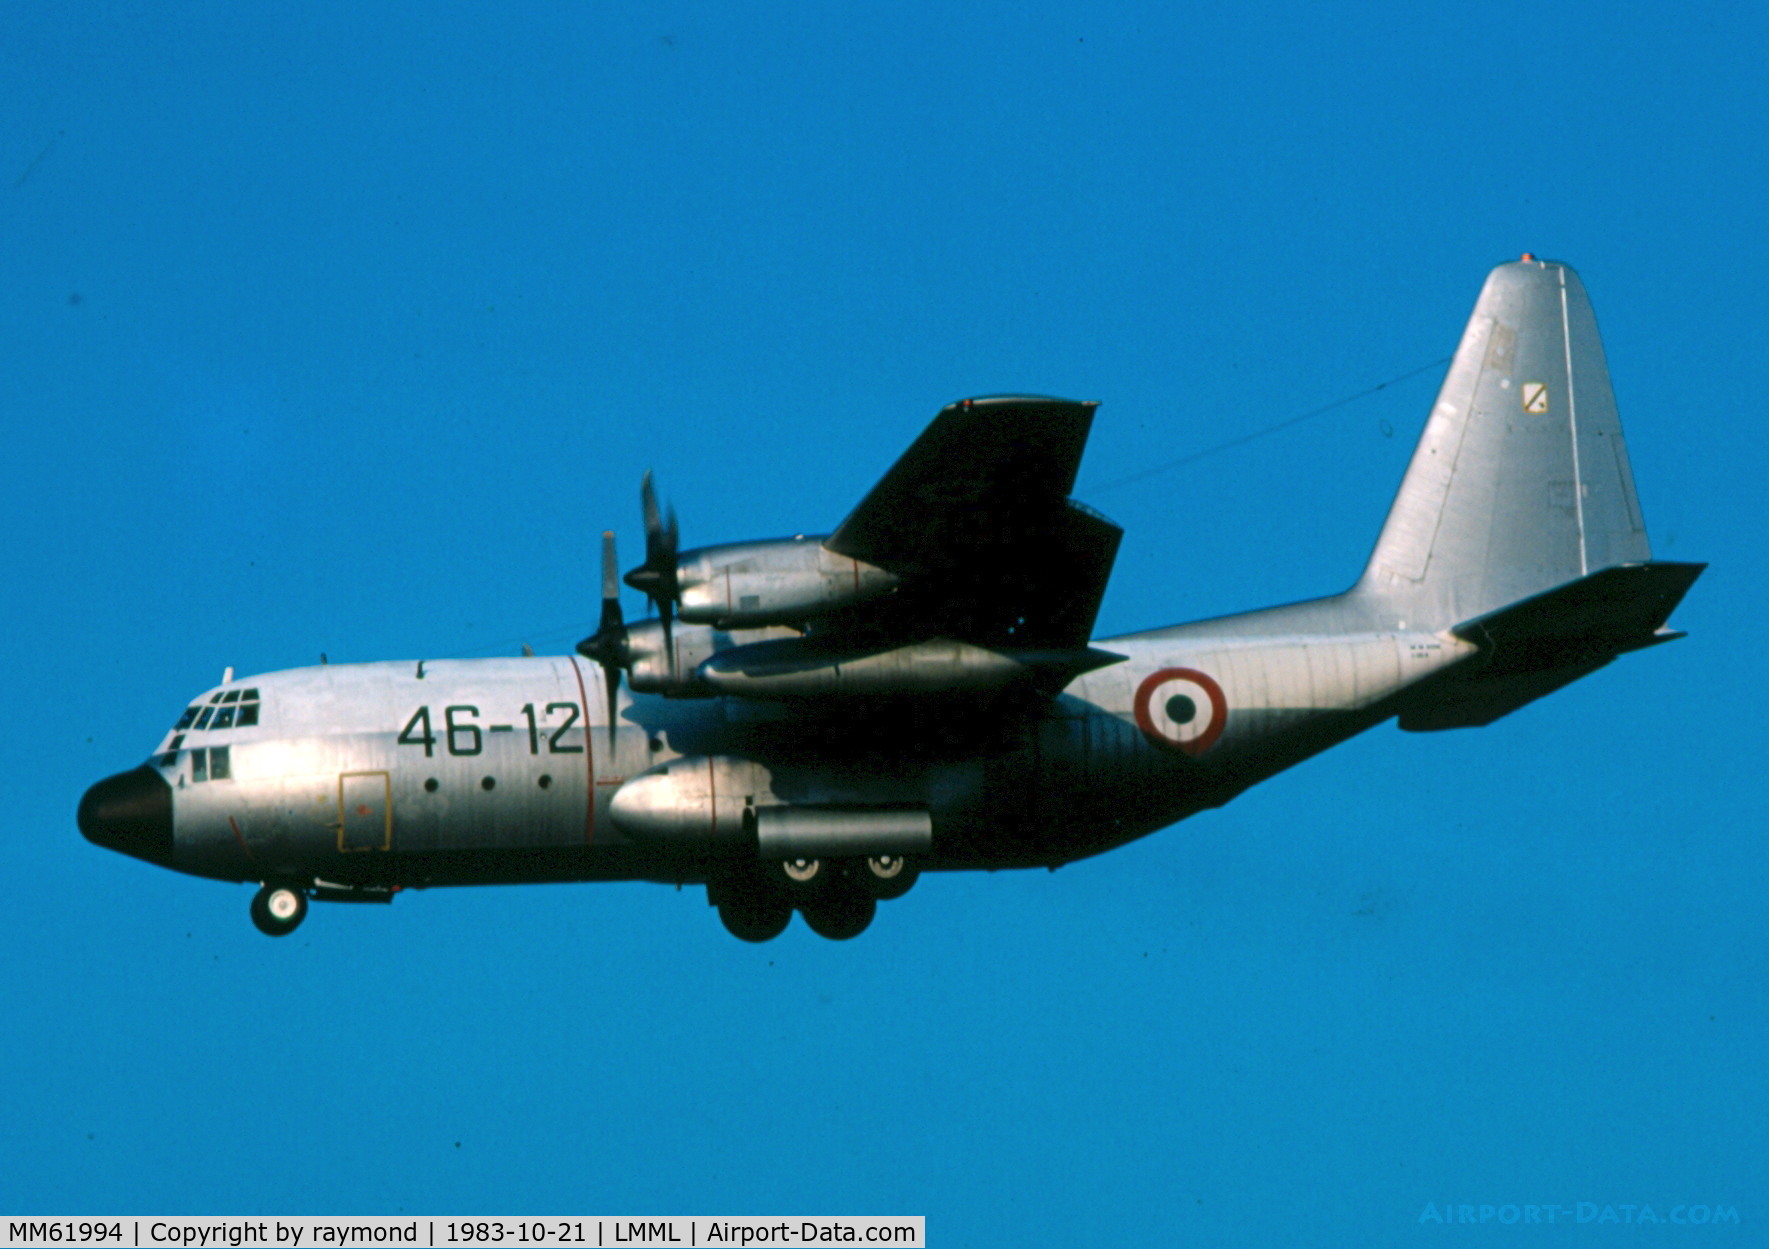 MM61994, 1971 Lockheed C-130H Hercules C/N 382-4452, C130 Hercules MM61994/46-12 Italian Air Force